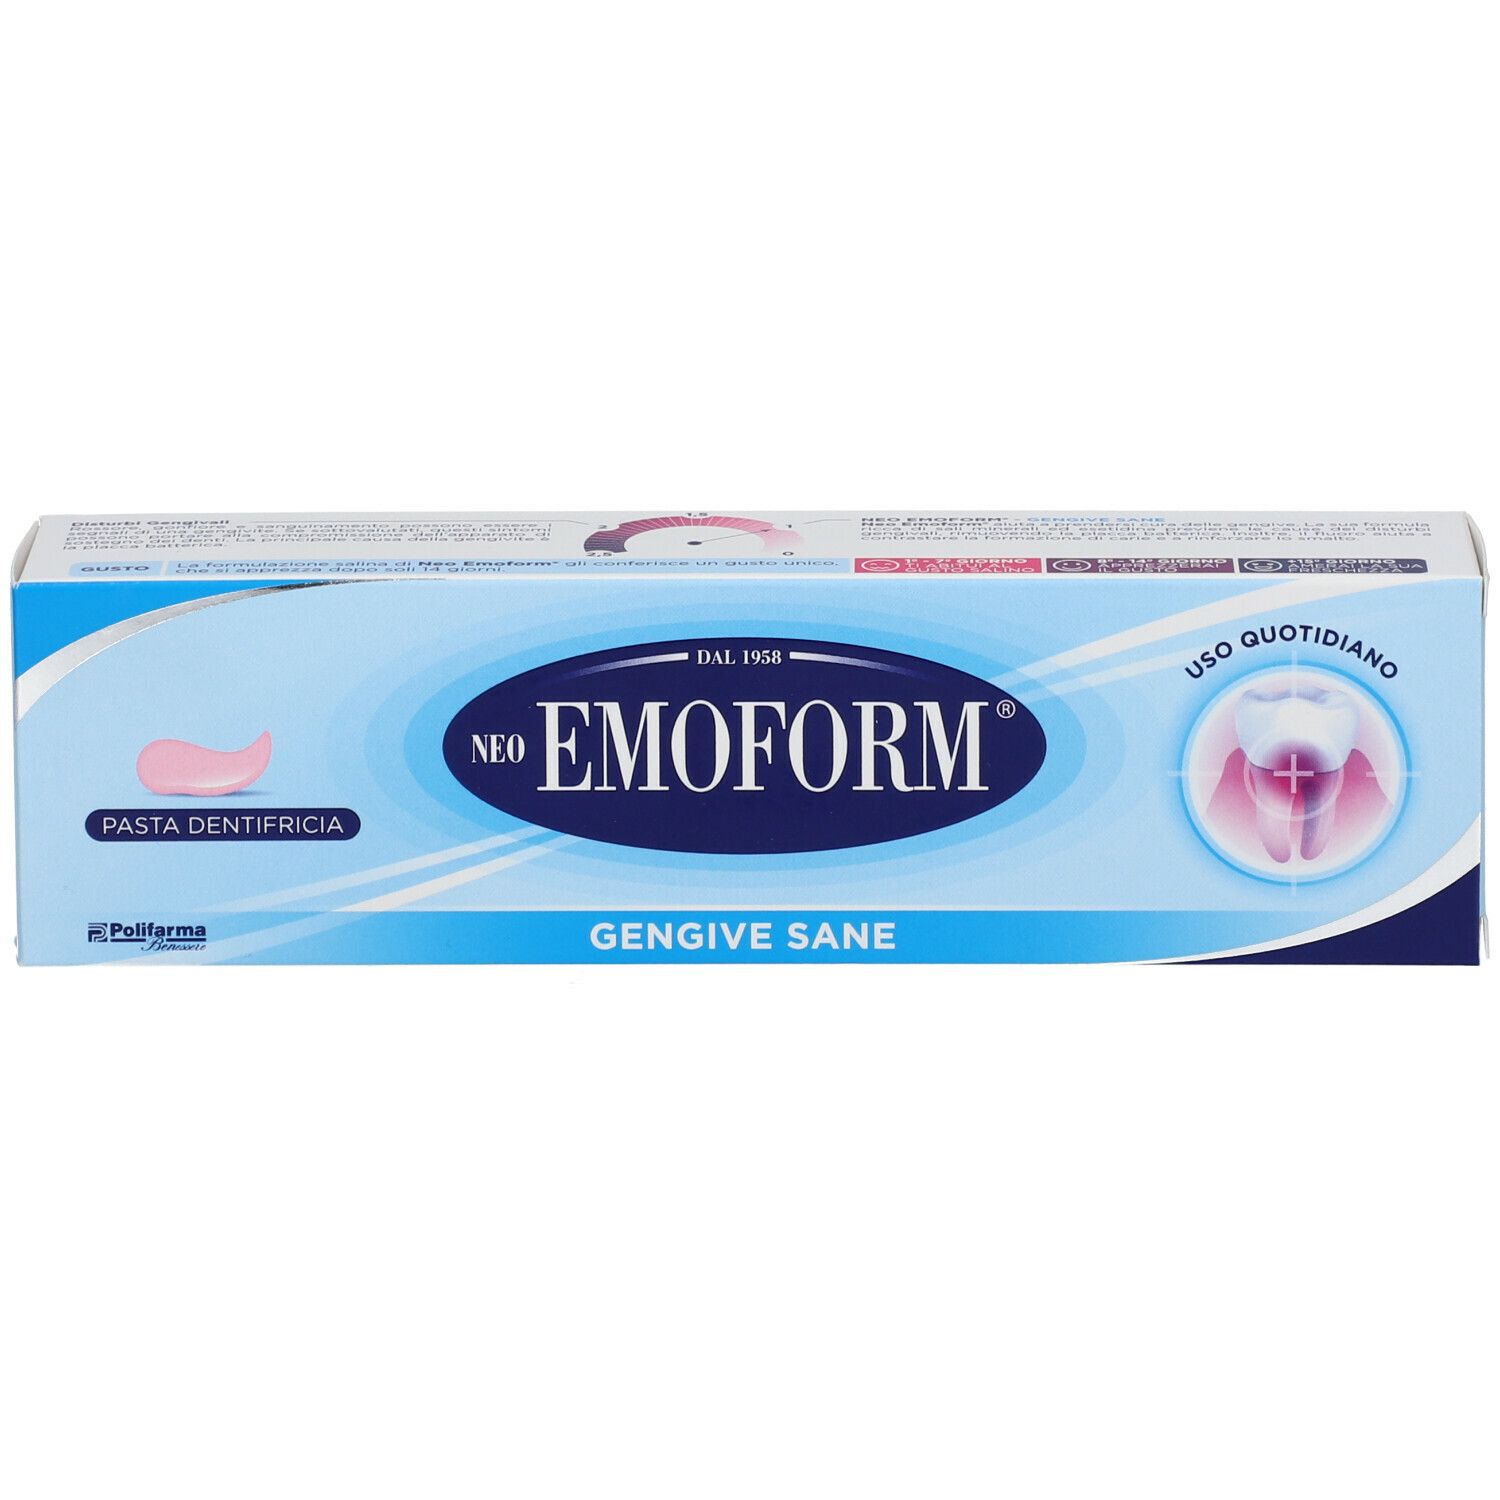 Neoemoform® Dentifricio per Gengive Sane